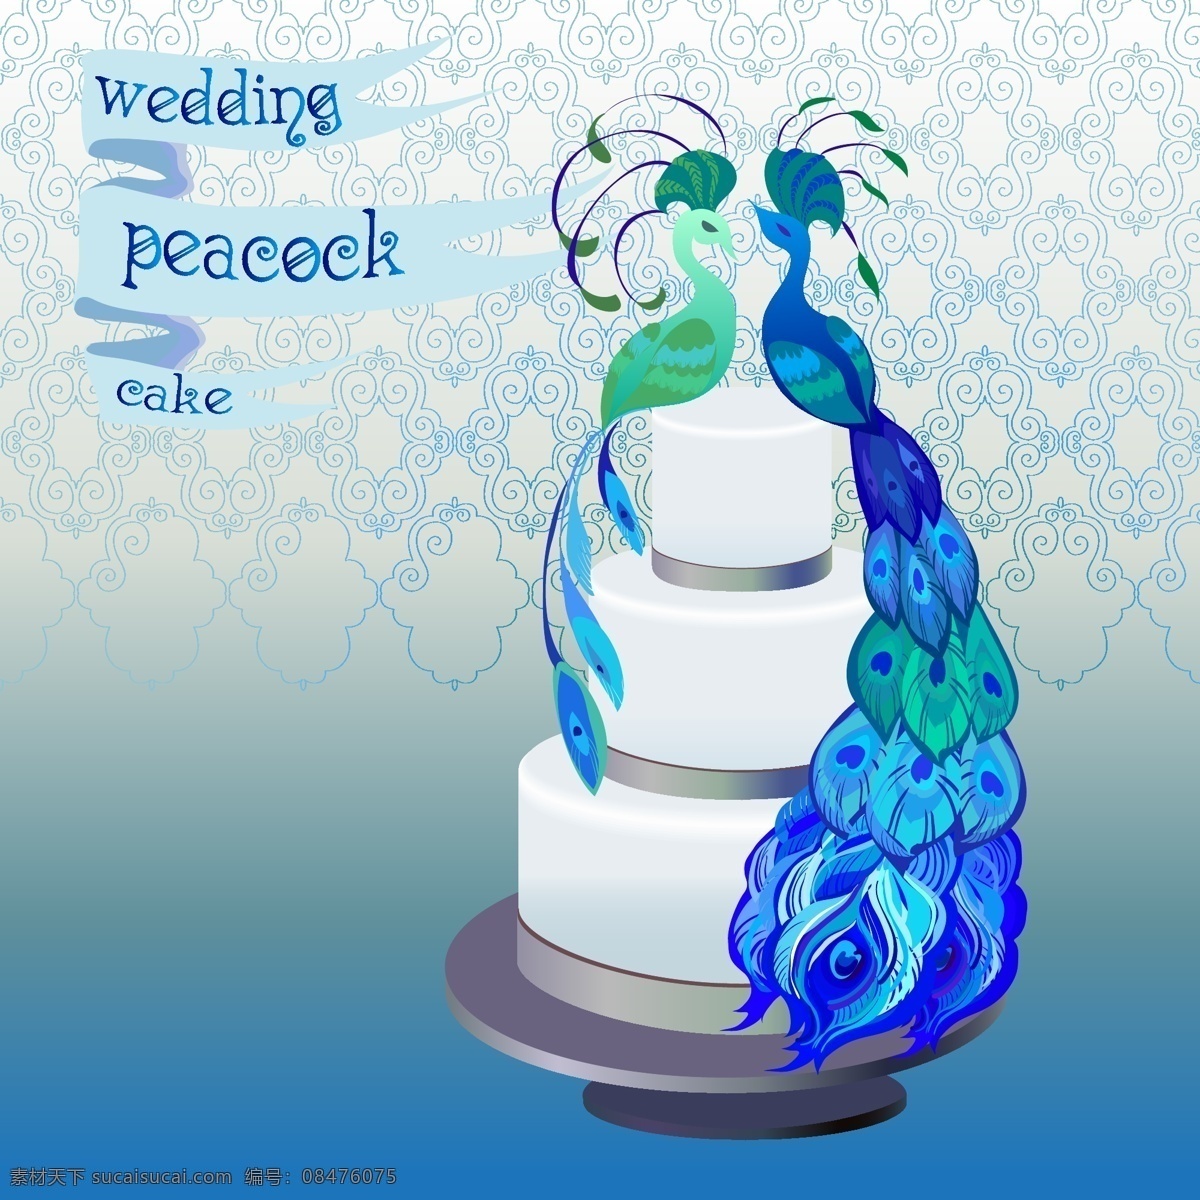 卡通 蓝 孔雀 蛋糕 矢量 背景 餐饮美食 婚礼蛋糕 结婚蛋糕 卡通蛋糕 海报 浪漫 梦幻